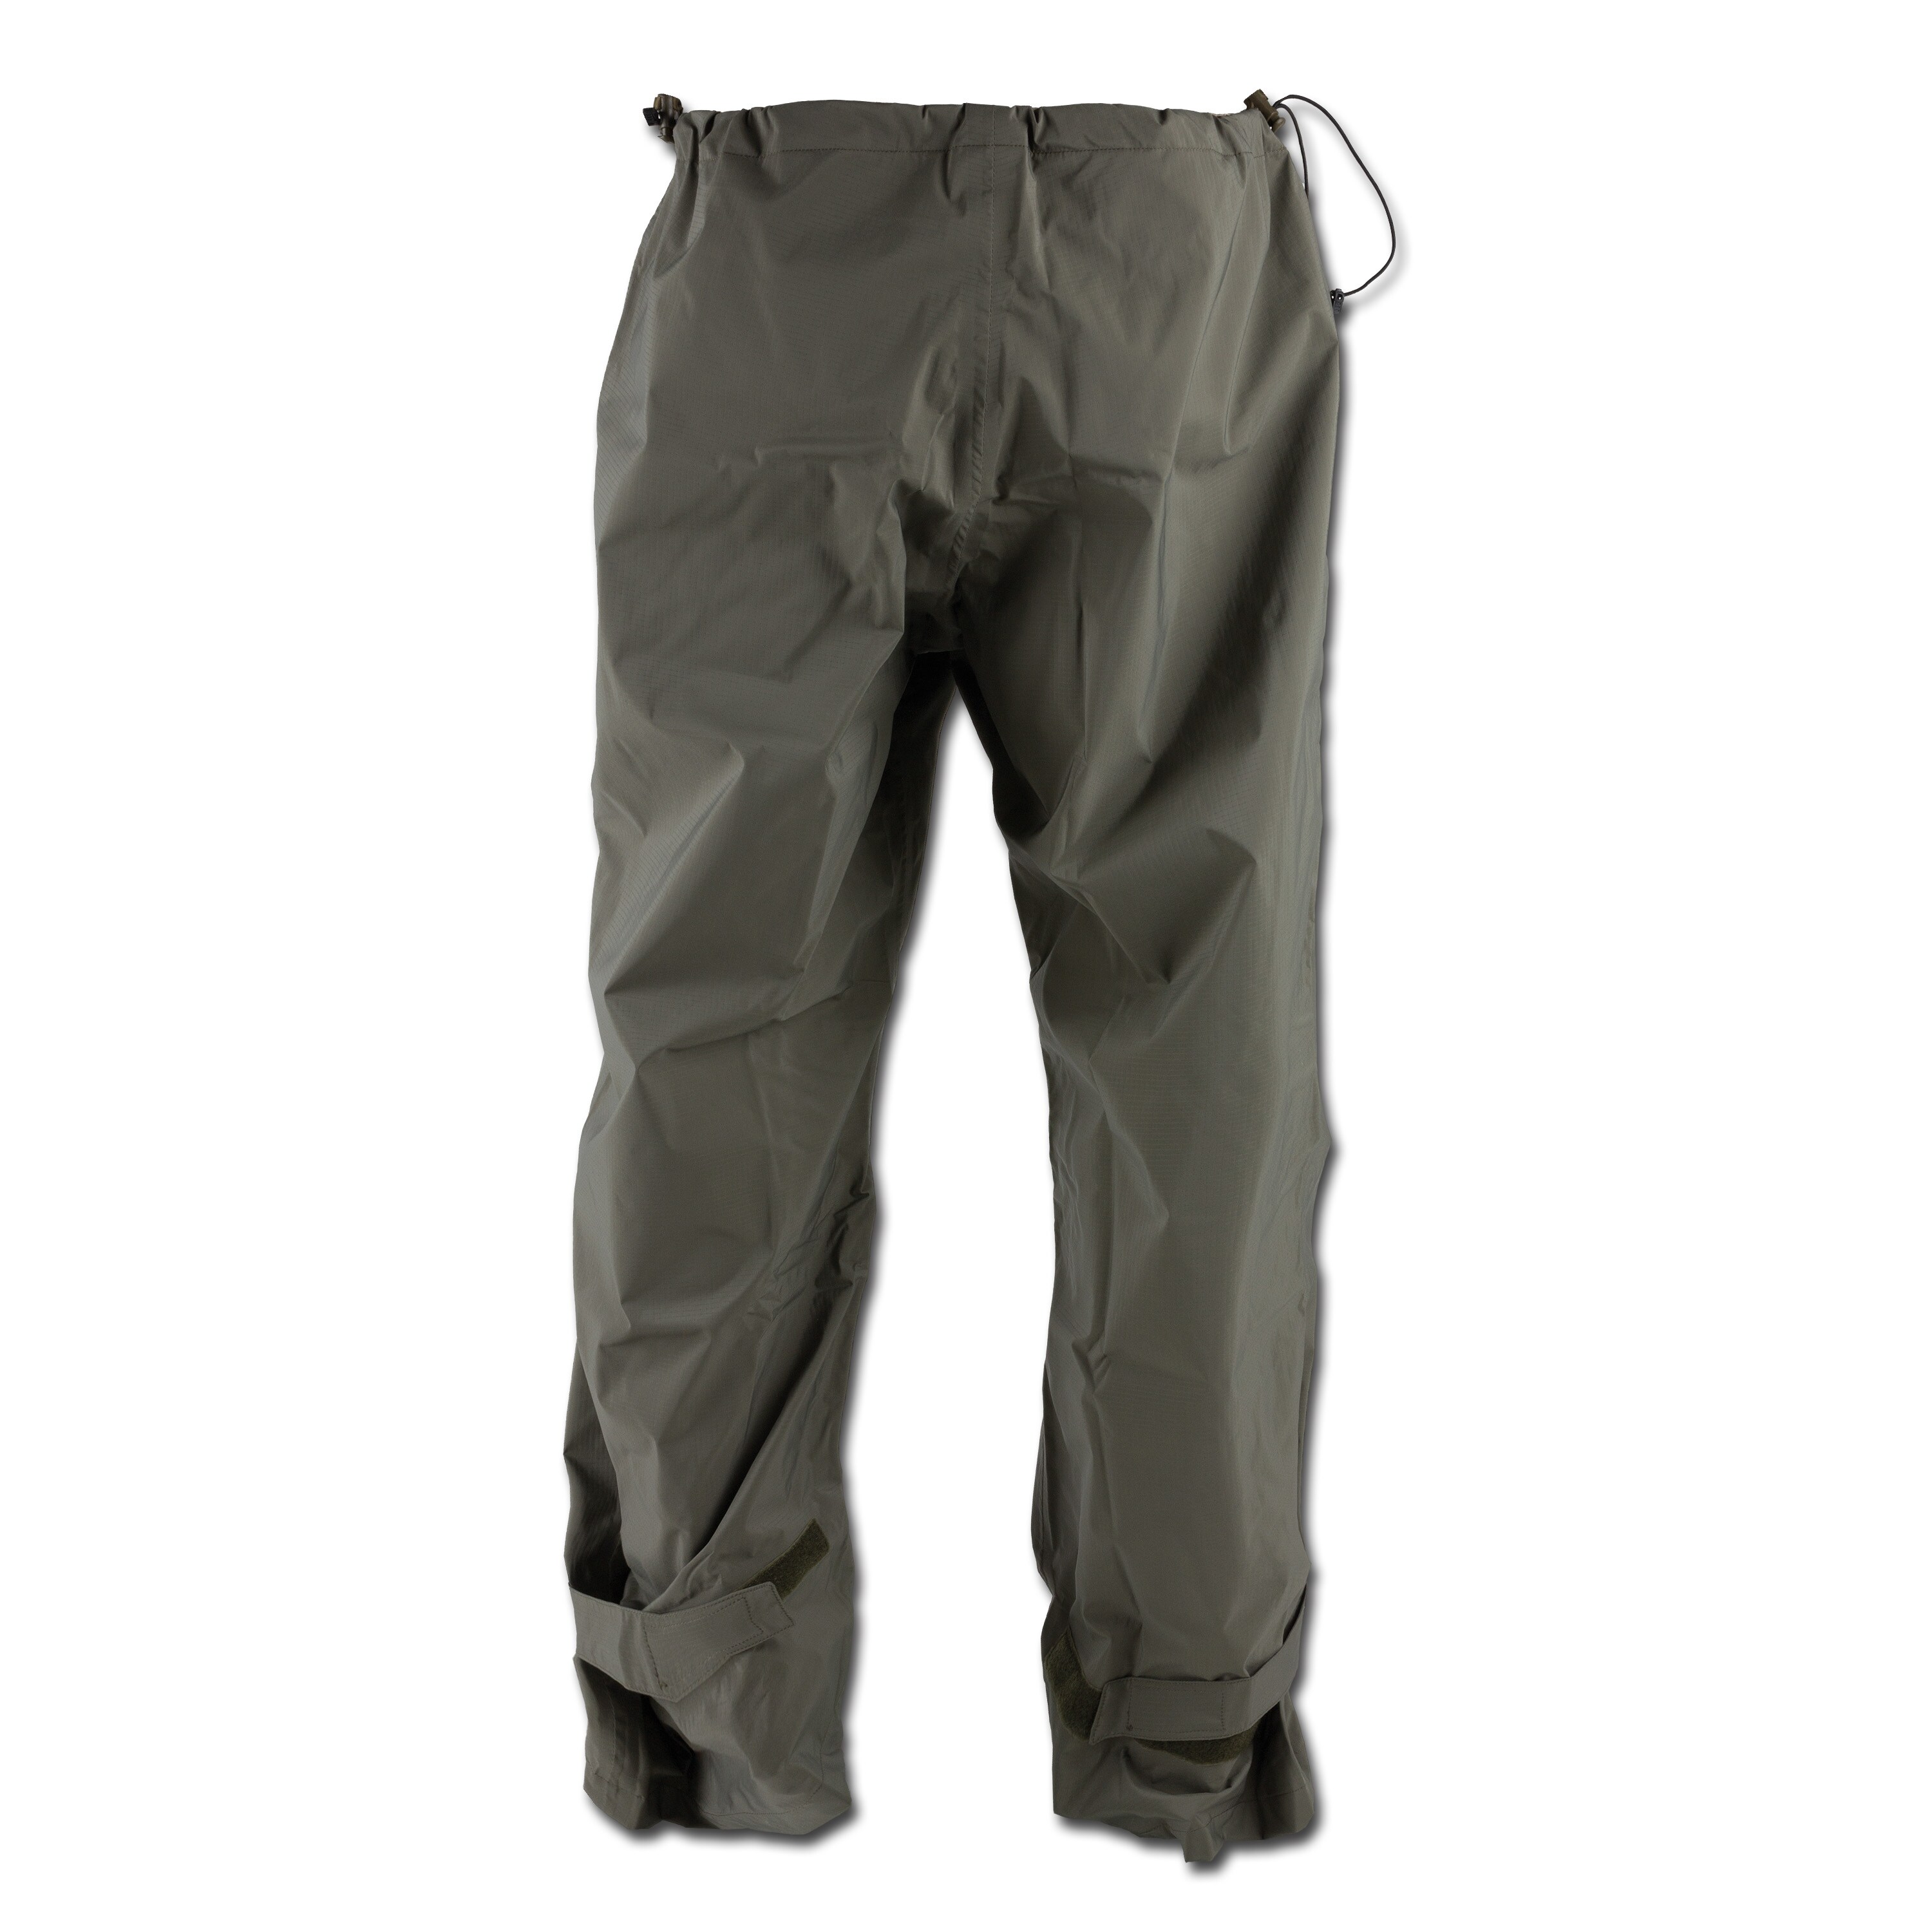 Carinthia Survival Rain Suit Trousers olive | Carinthia Survival Rain ...